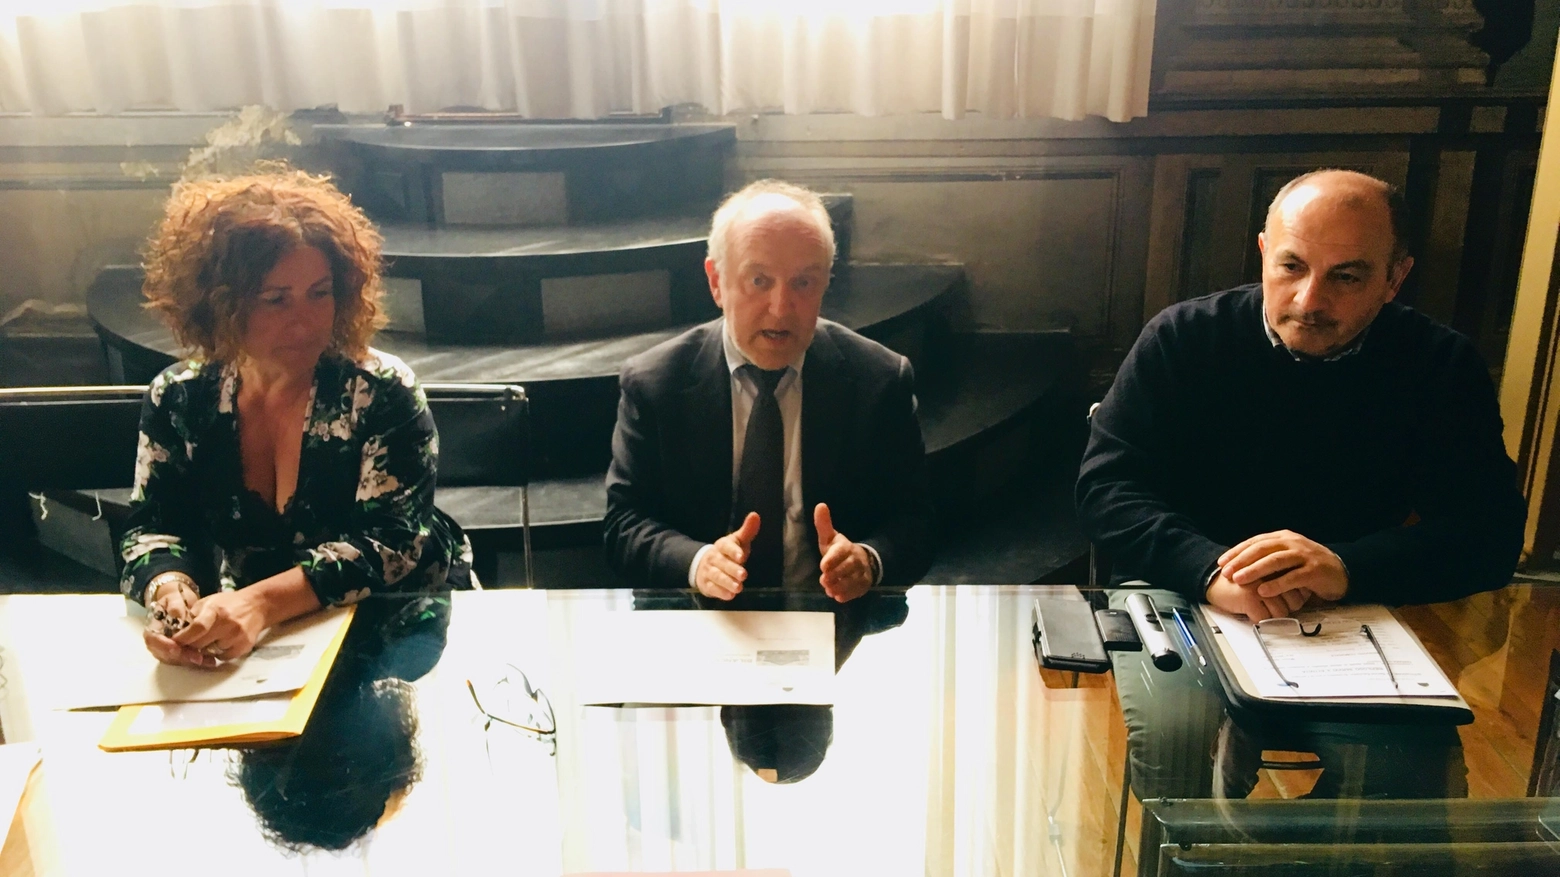 Da sinistra Cristina Corazzari, Tiziano Tagliani e Mauro vecchi